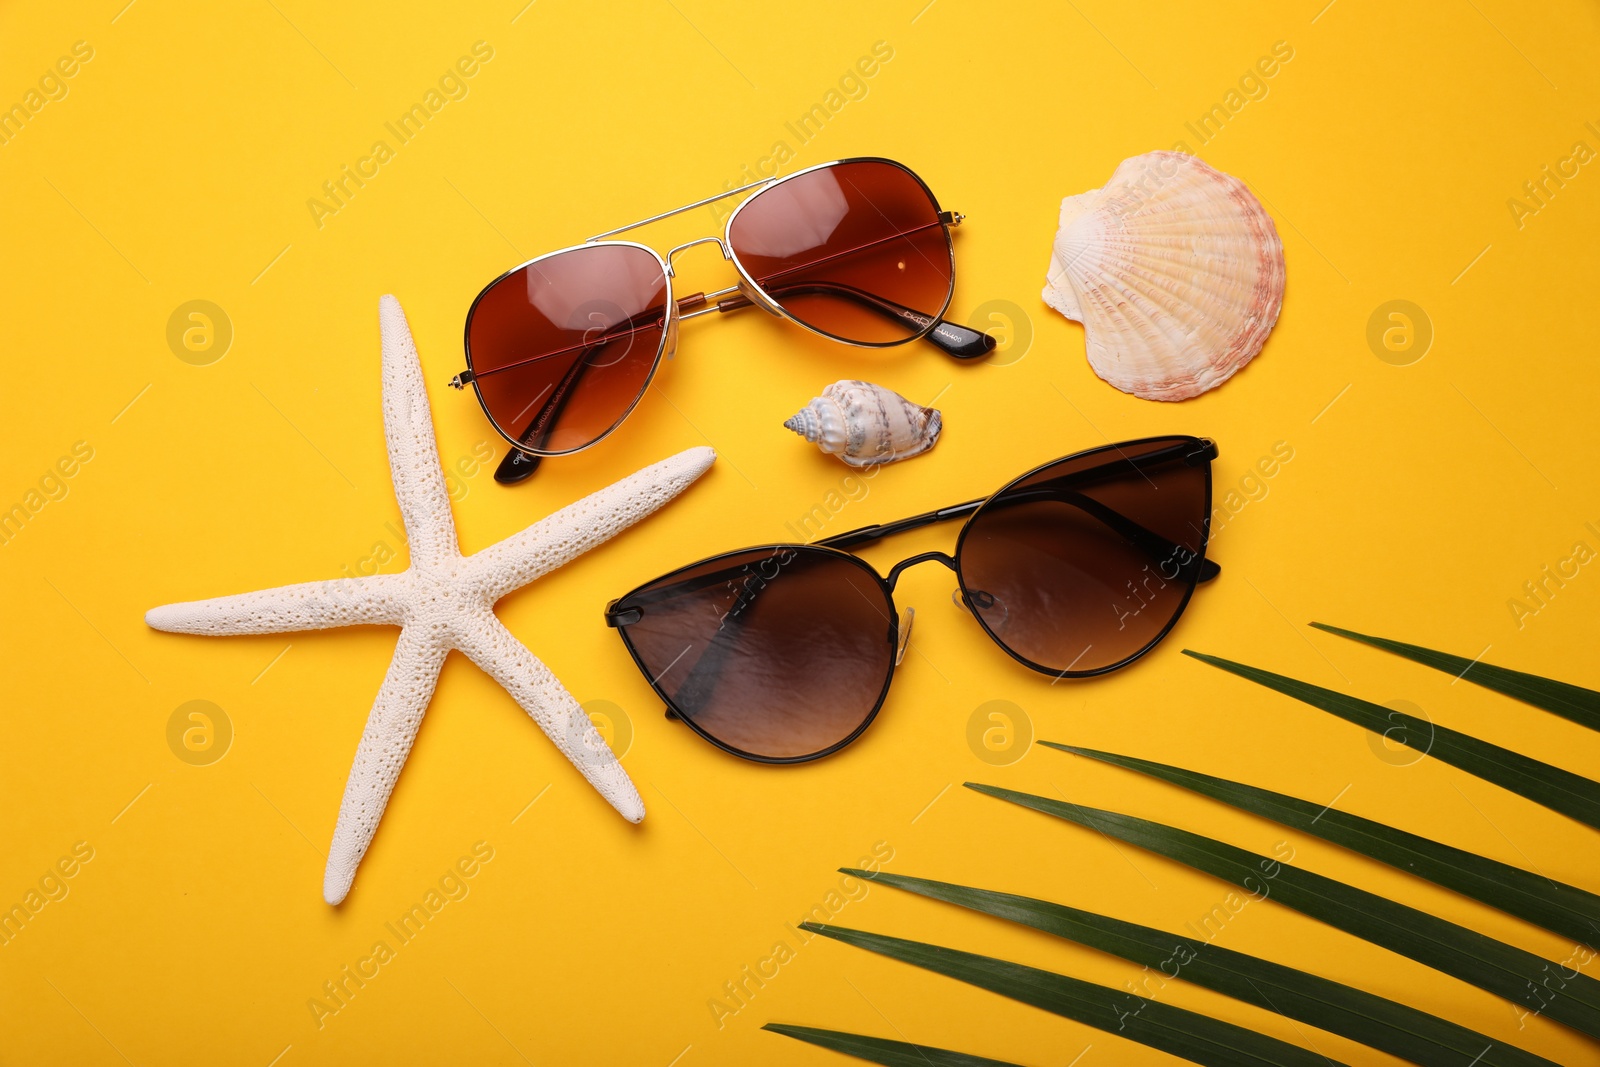 Photo of Stylish sunglasses, starfish and seashells on yellow background, flat lay